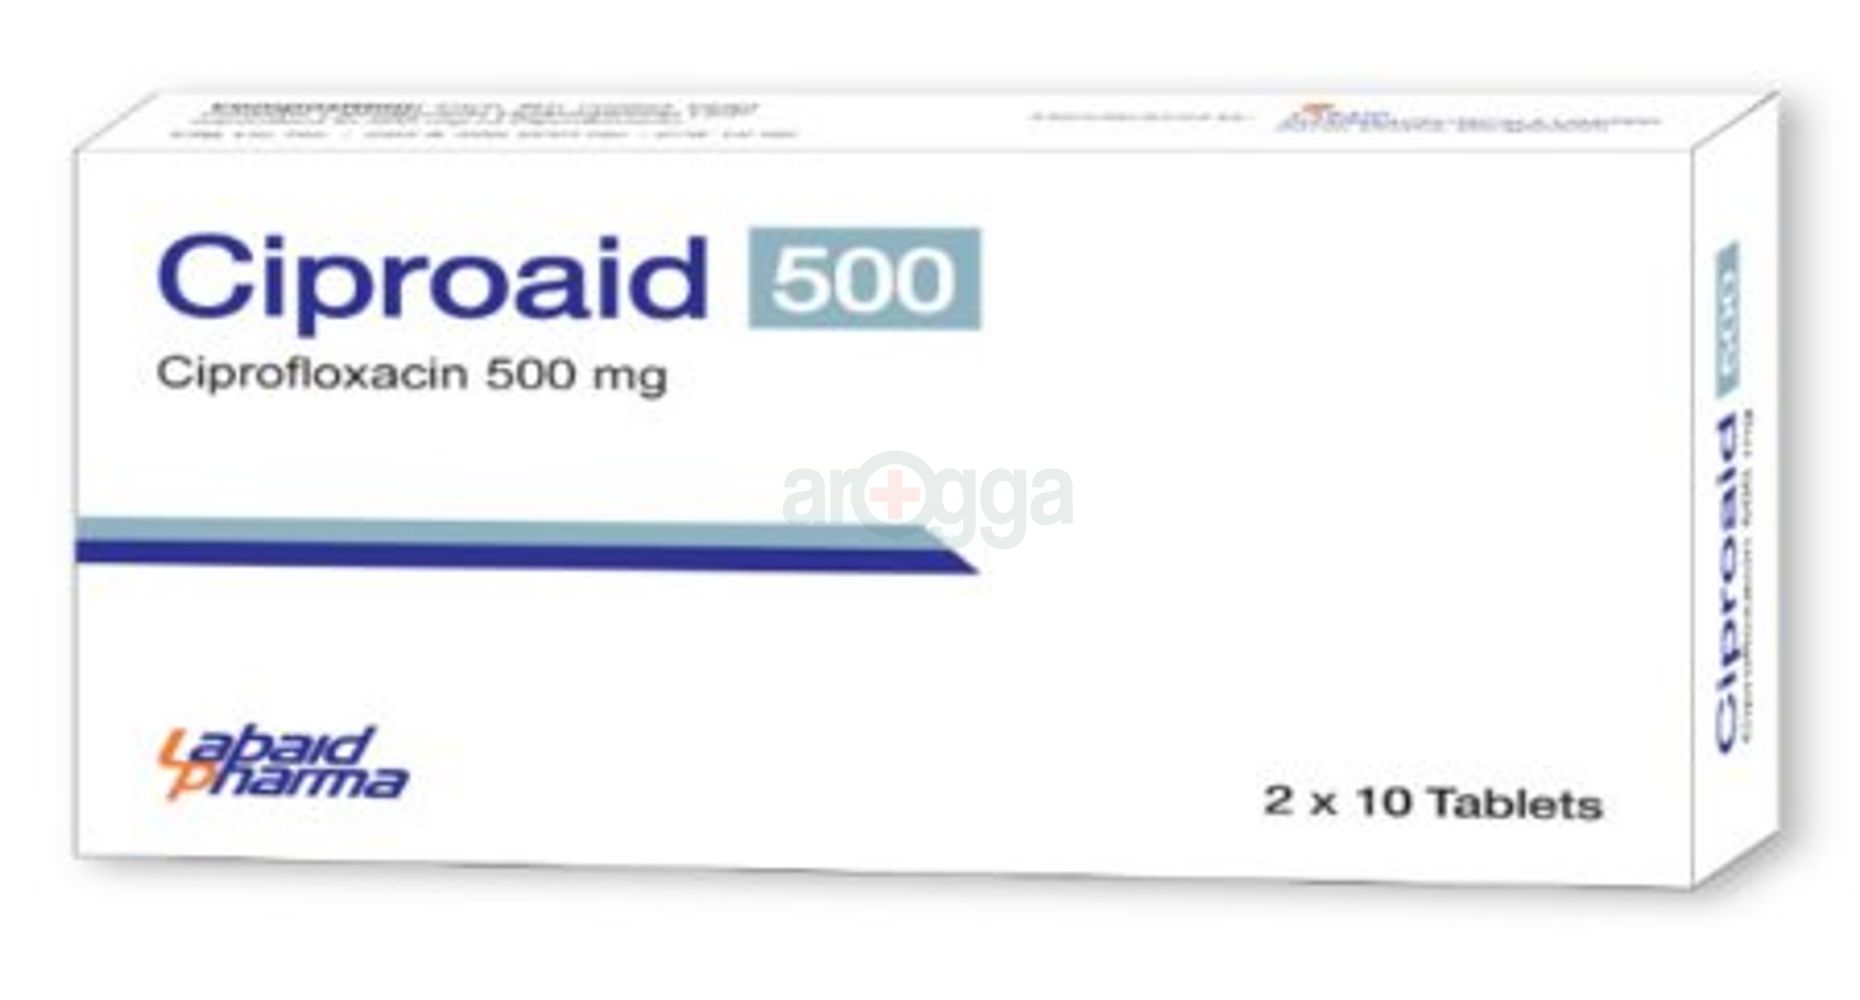 Ciproaid-500